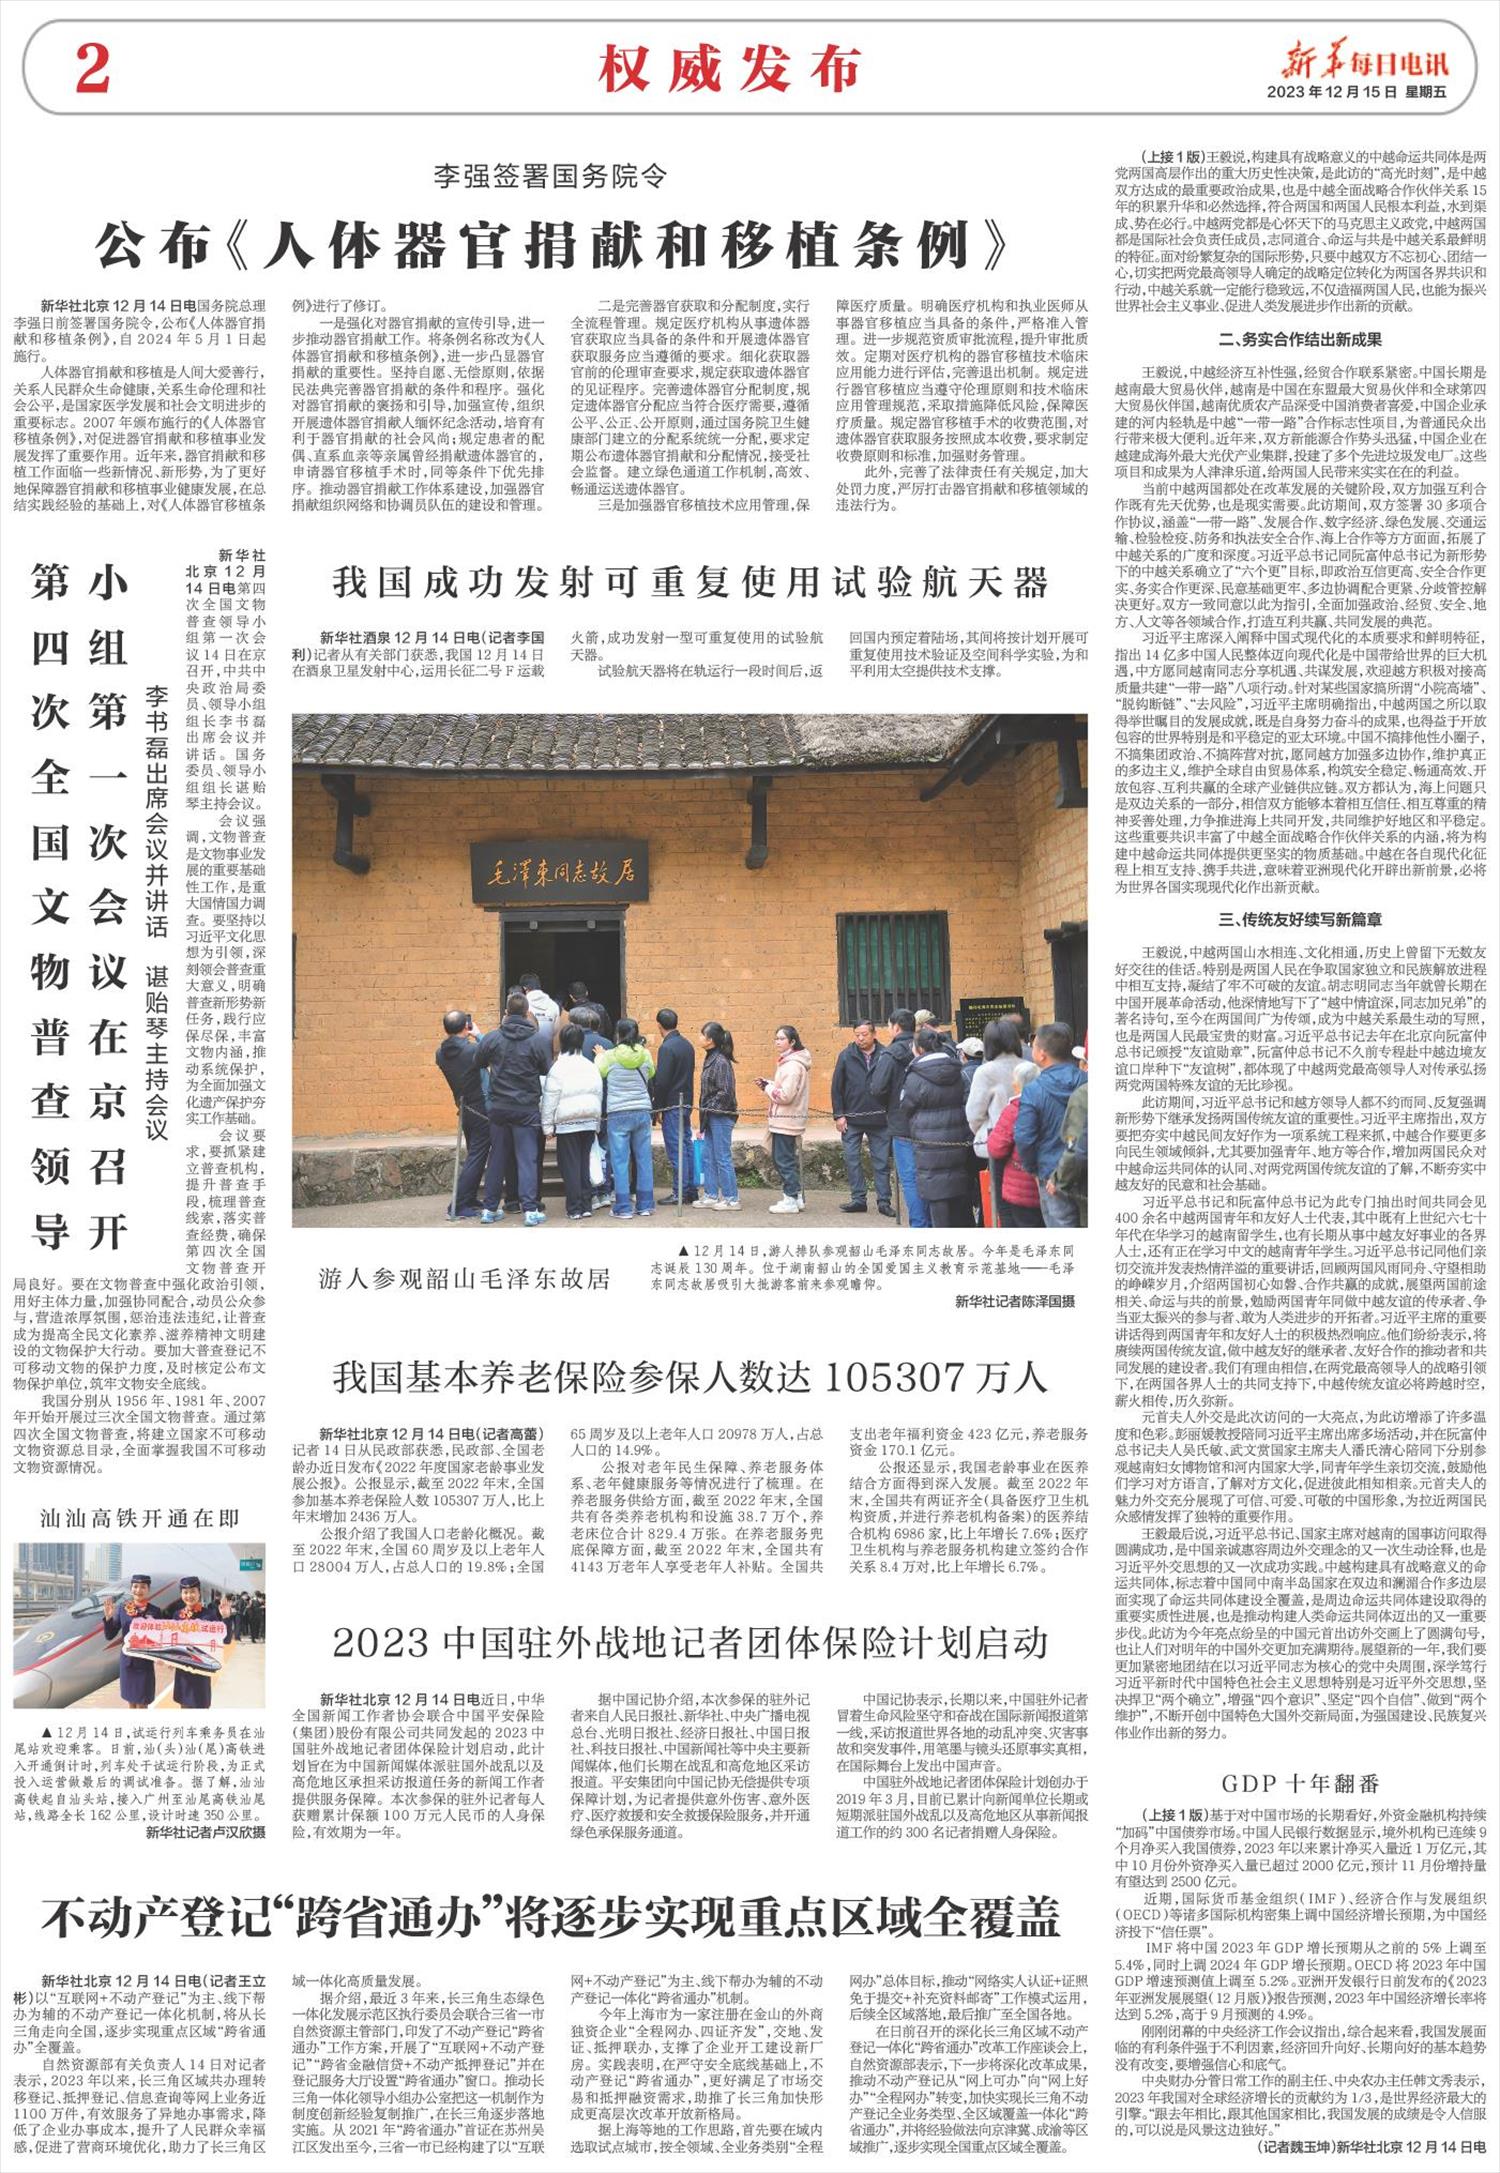 新华每日电讯-微报纸-2023年12月15日